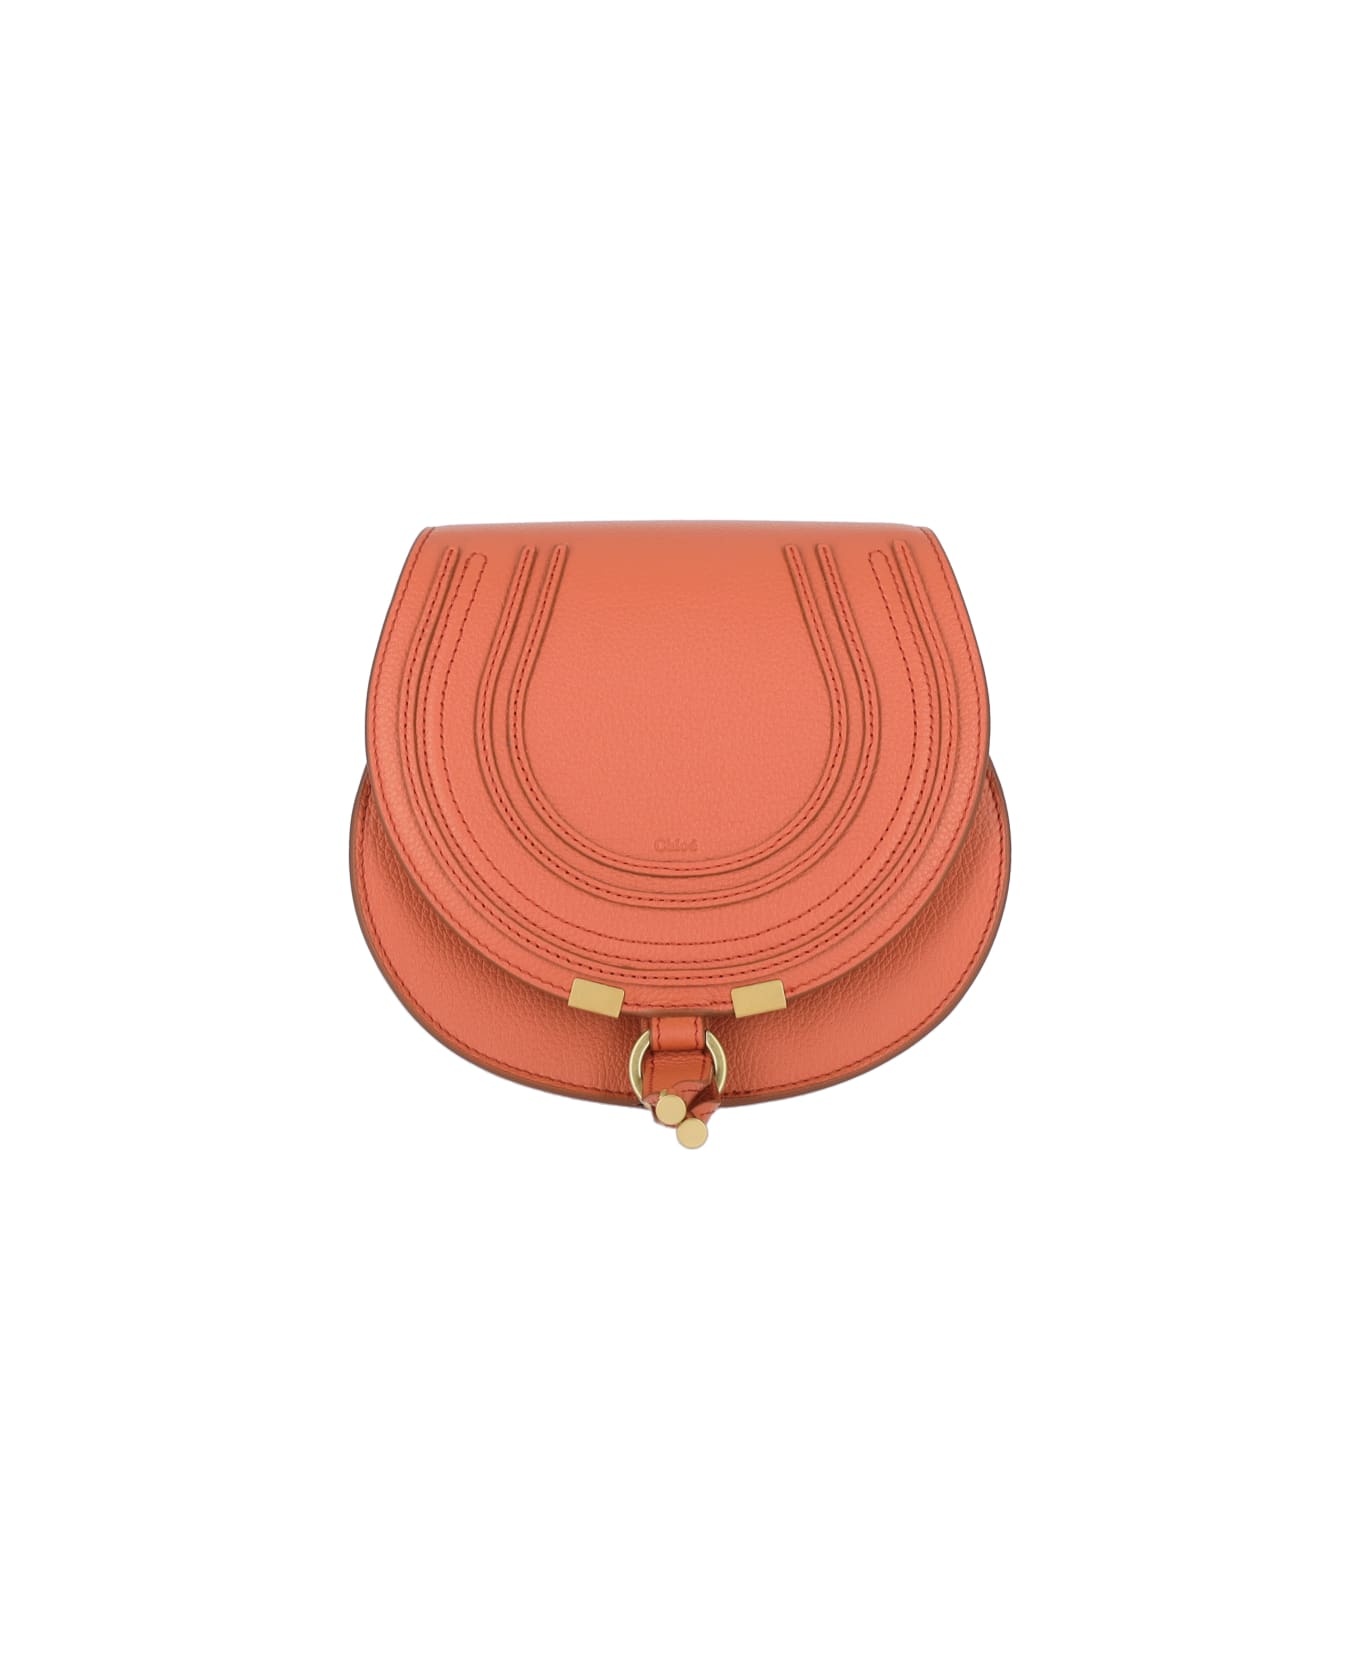 Mercie Shoulder Bag In Orange Leather - 1